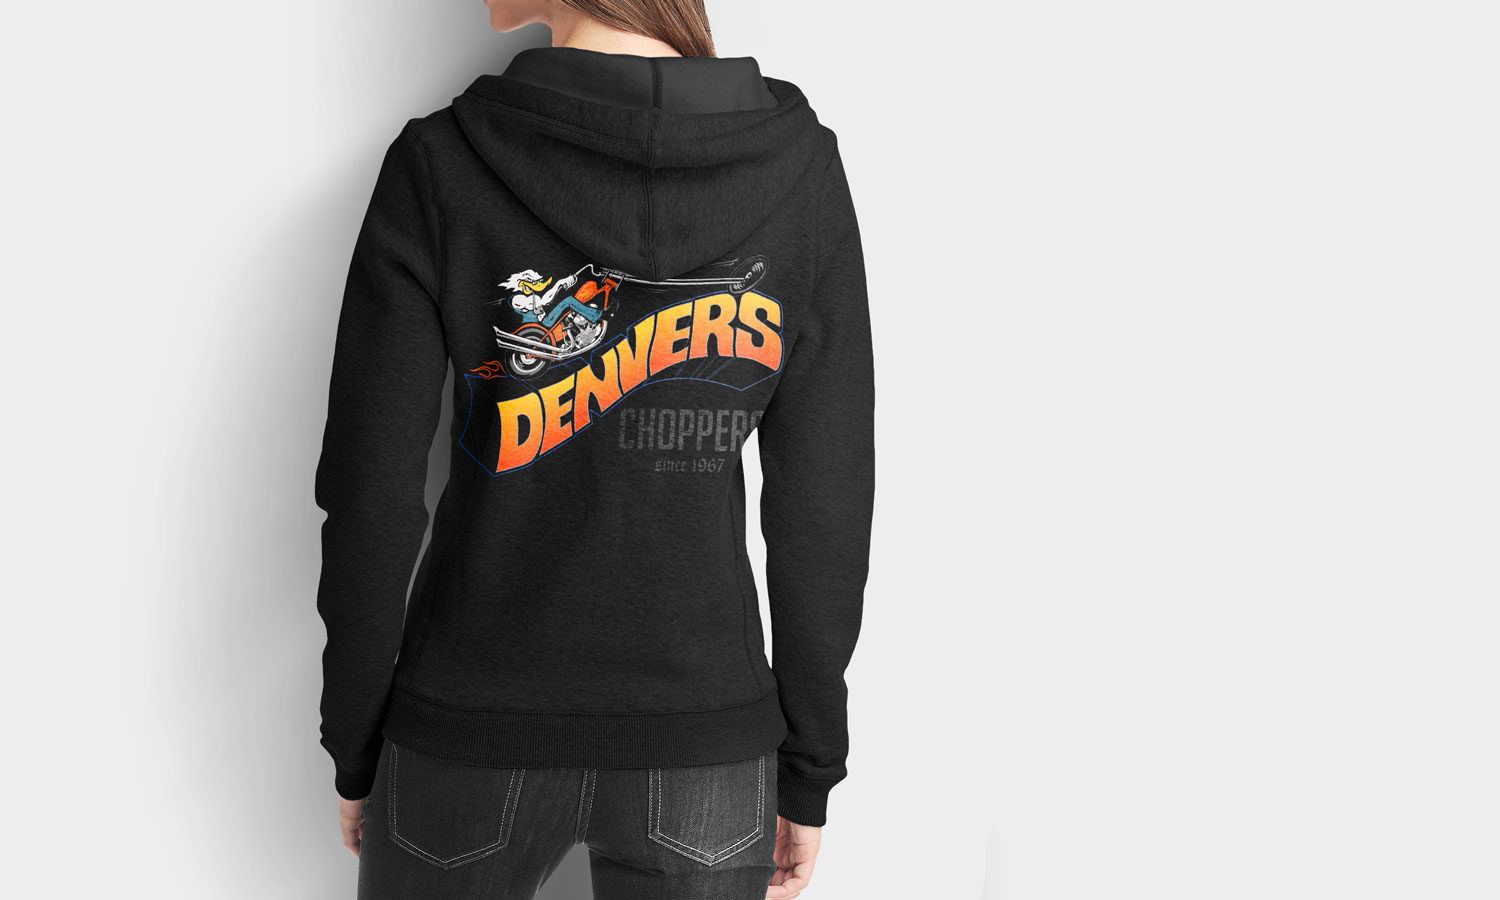 Denver’s Choppers hoodie